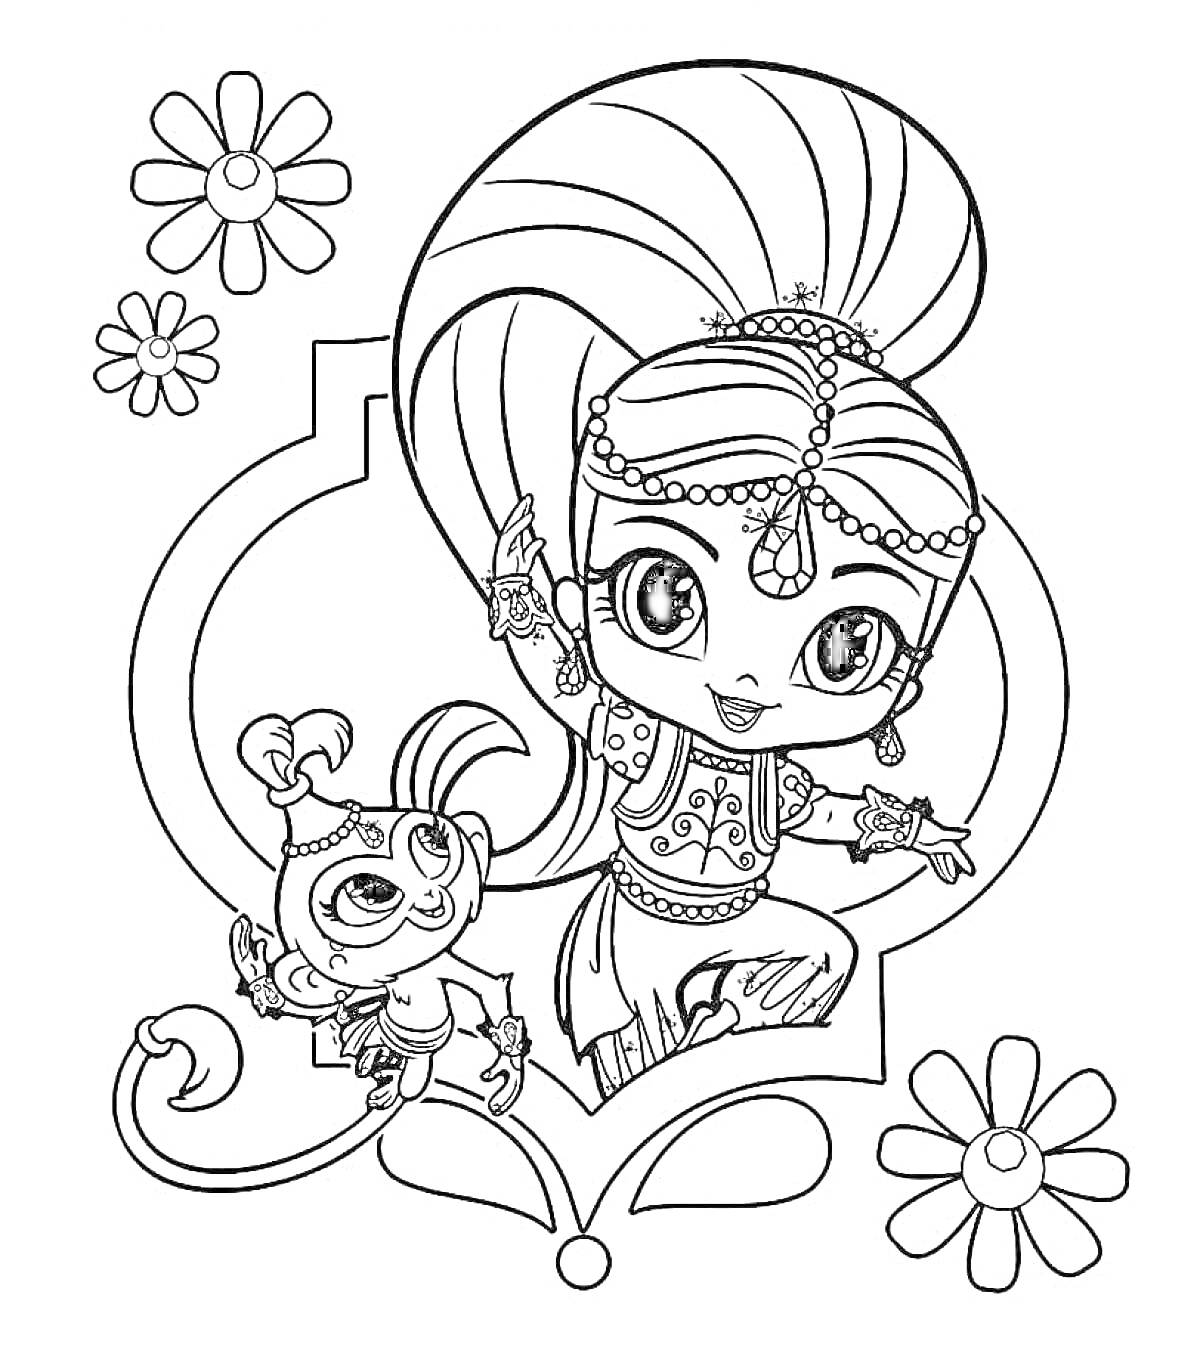 Девочка-джин и обезьяна с большим хвостом, окружённые цветами